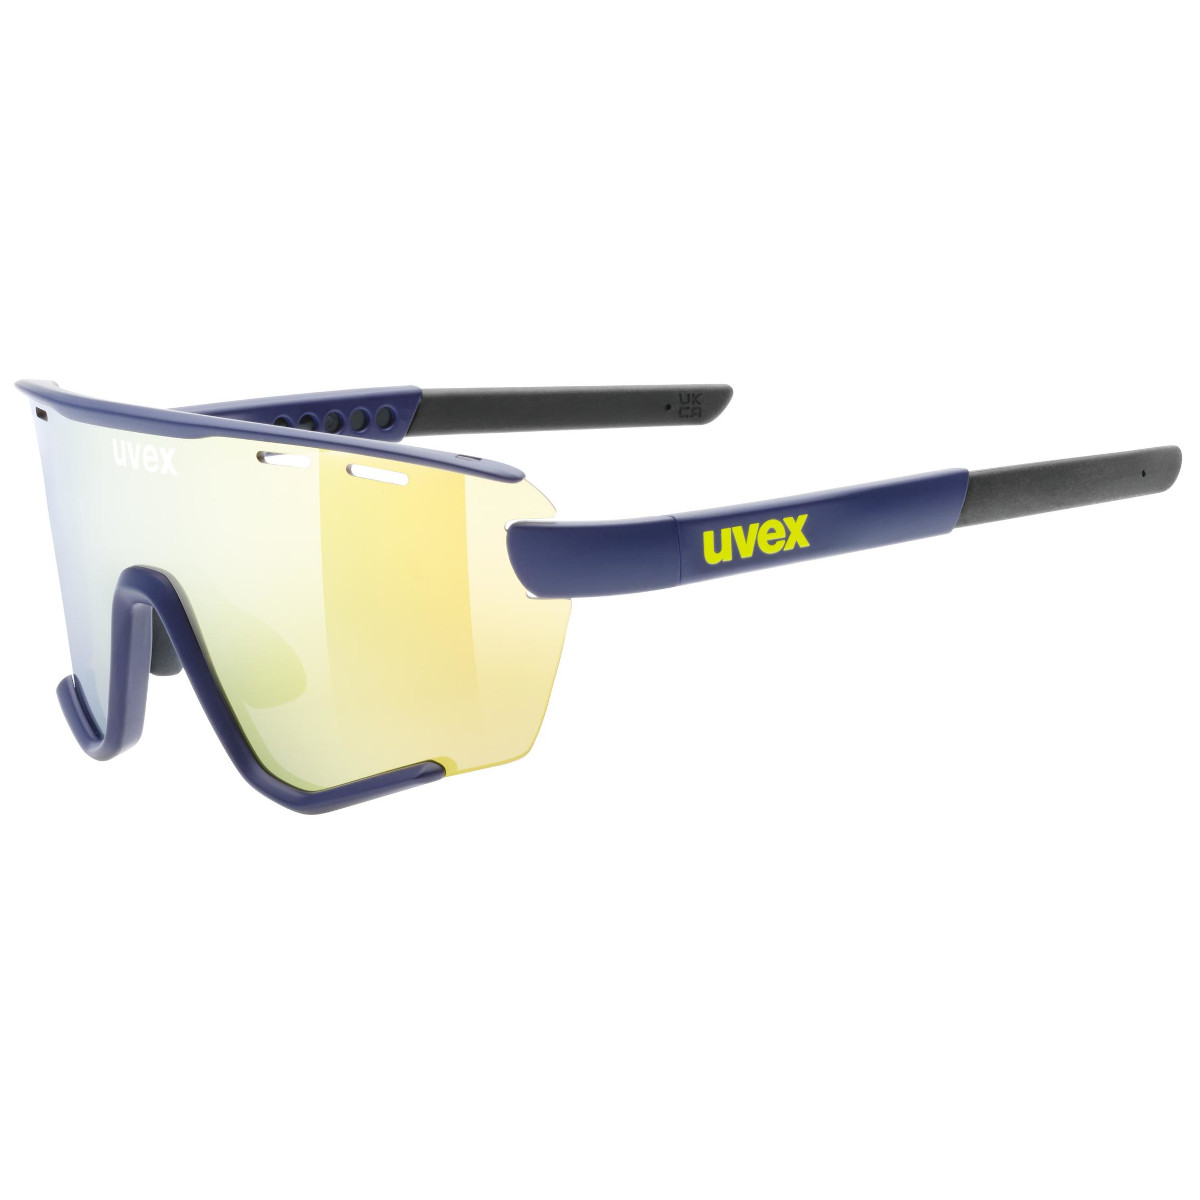 Produktbild von Uvex sportstyle 236 small Set Brille - blue matt/mirror yellow + clear